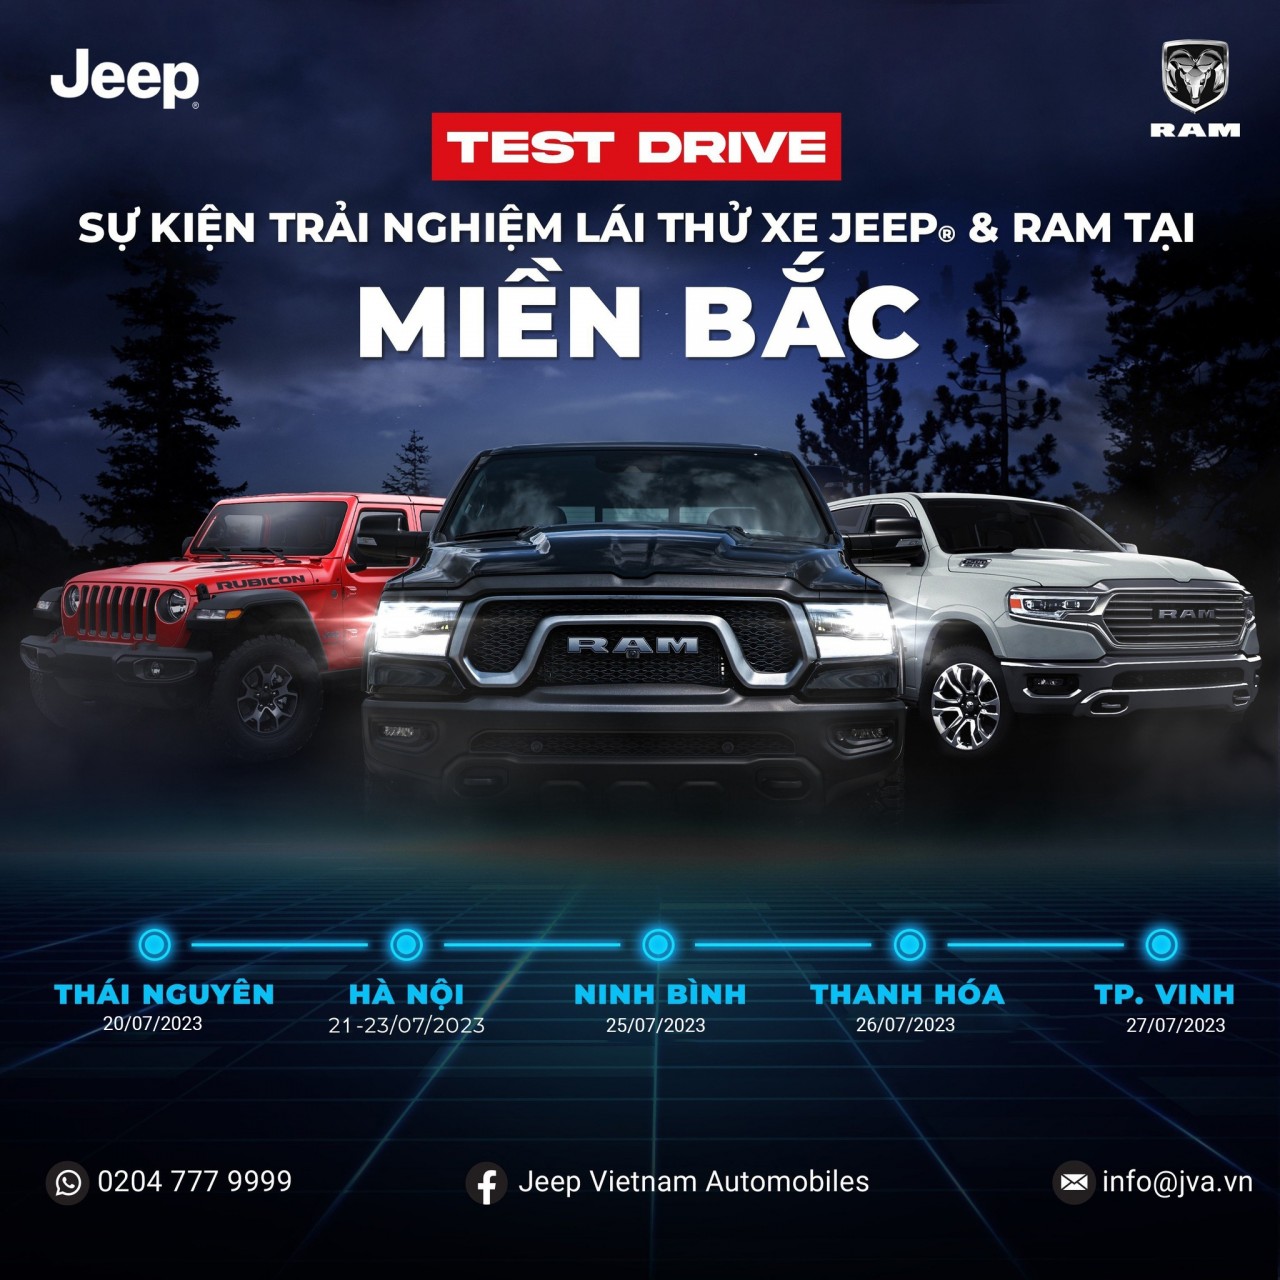 Jeep - Ram tổ chức chuổi chương trình lái thử ở 5 tỉnh miền Bắc.